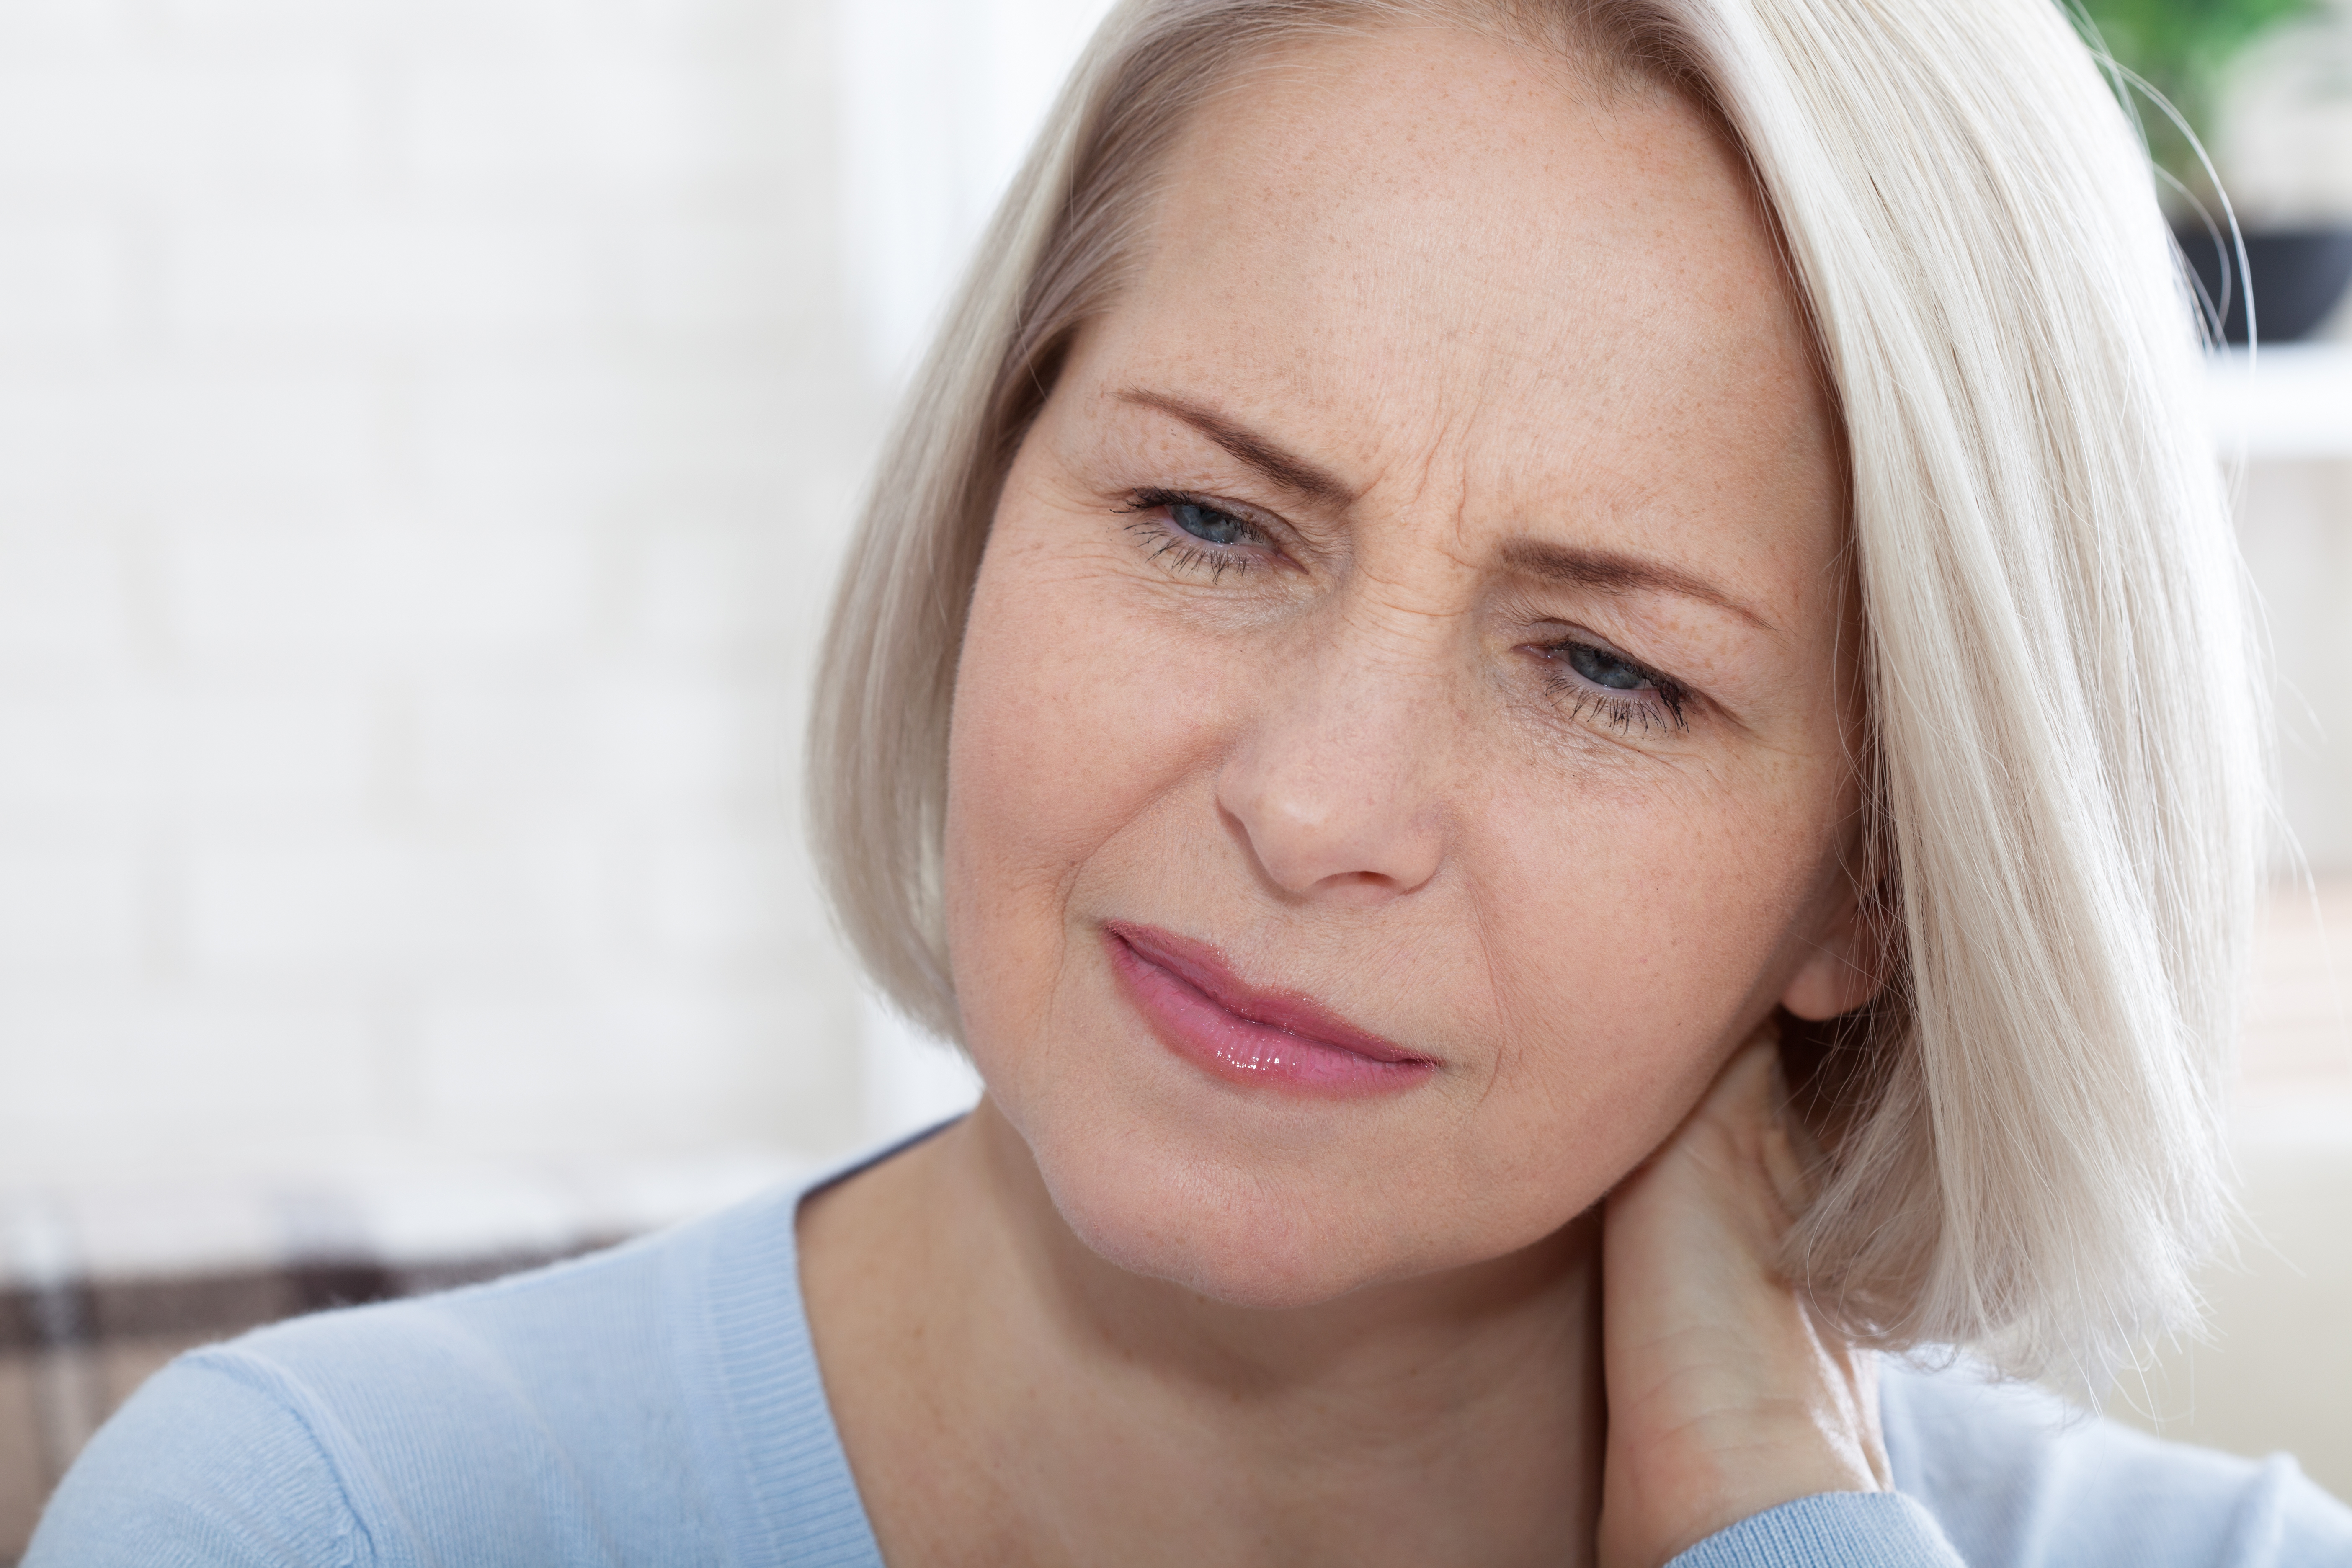 Une femme avec une expression inquiète sur le visage | Source : Shutterstock